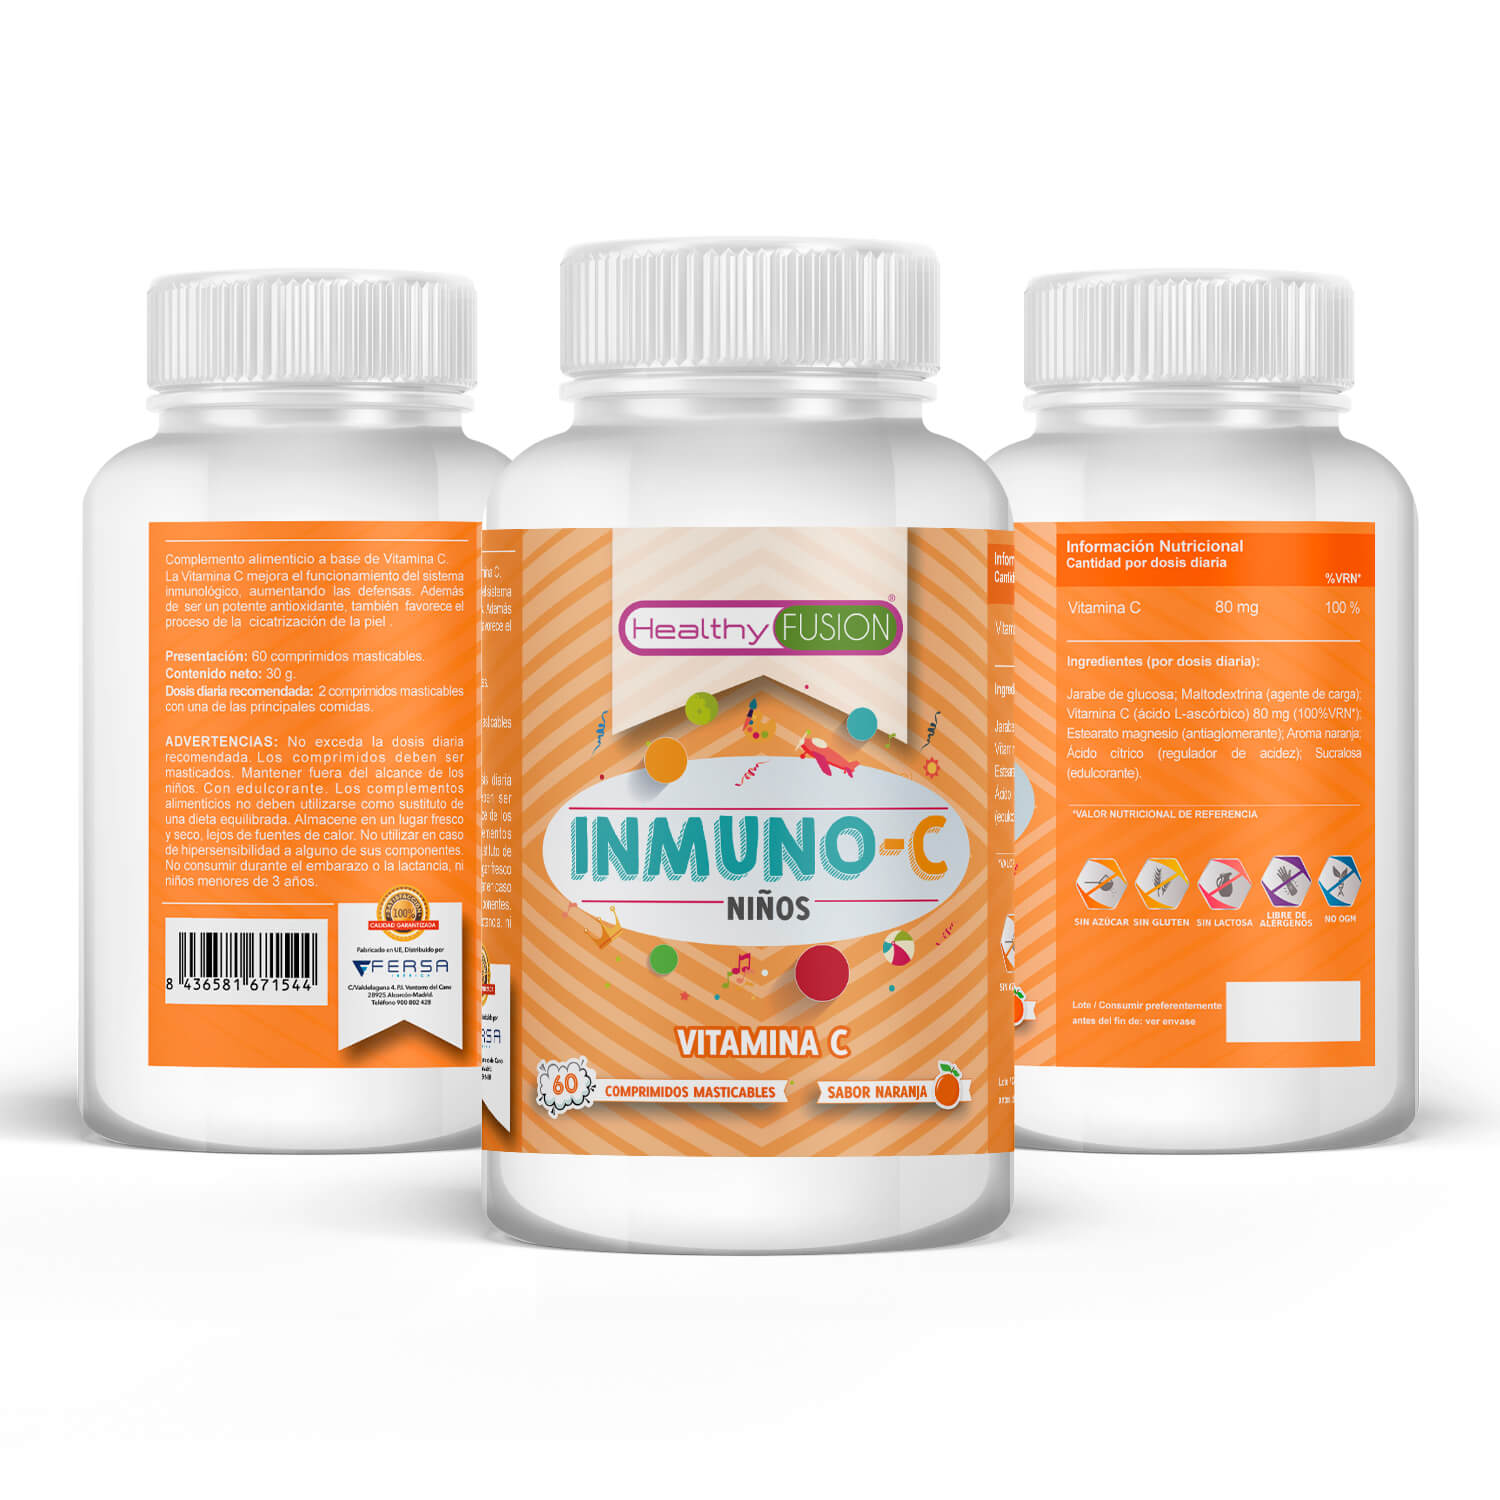 Etiqueta nutricional Inmuno-C